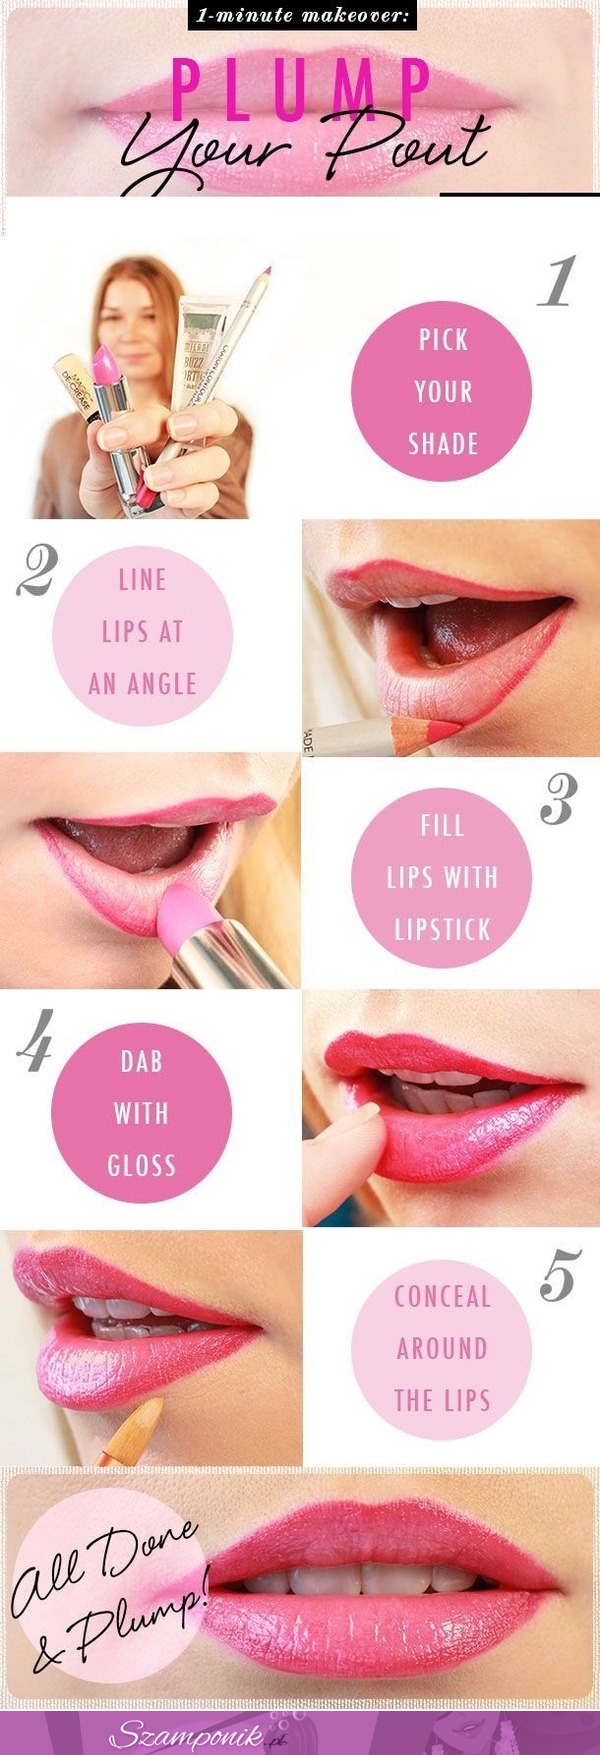 Jak pomalować idealnie usta- sprawdź